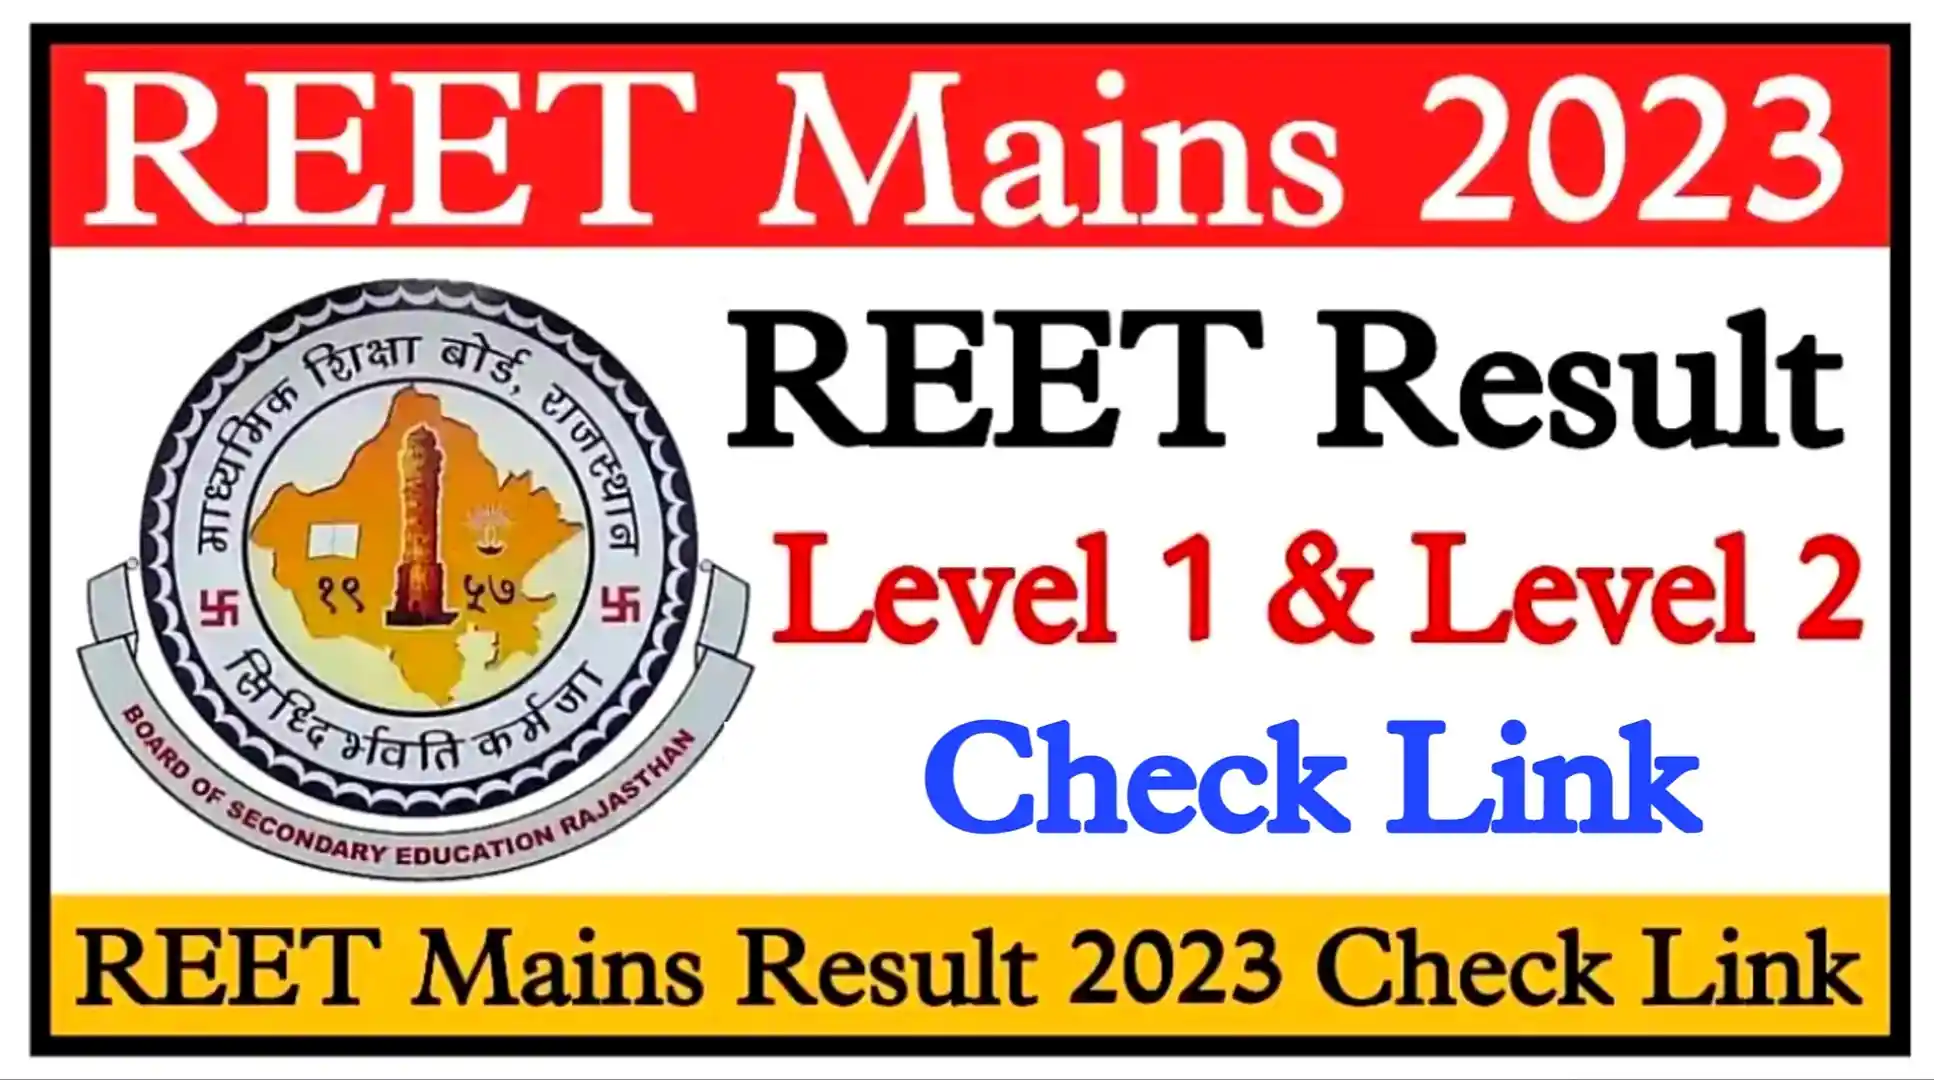 REET Level 2 Final Result 2023 SST रीट लेवल 2 सभी विषय का फाइनल परिणाम और जिला आवंटन लिस्ट यहां से देखें